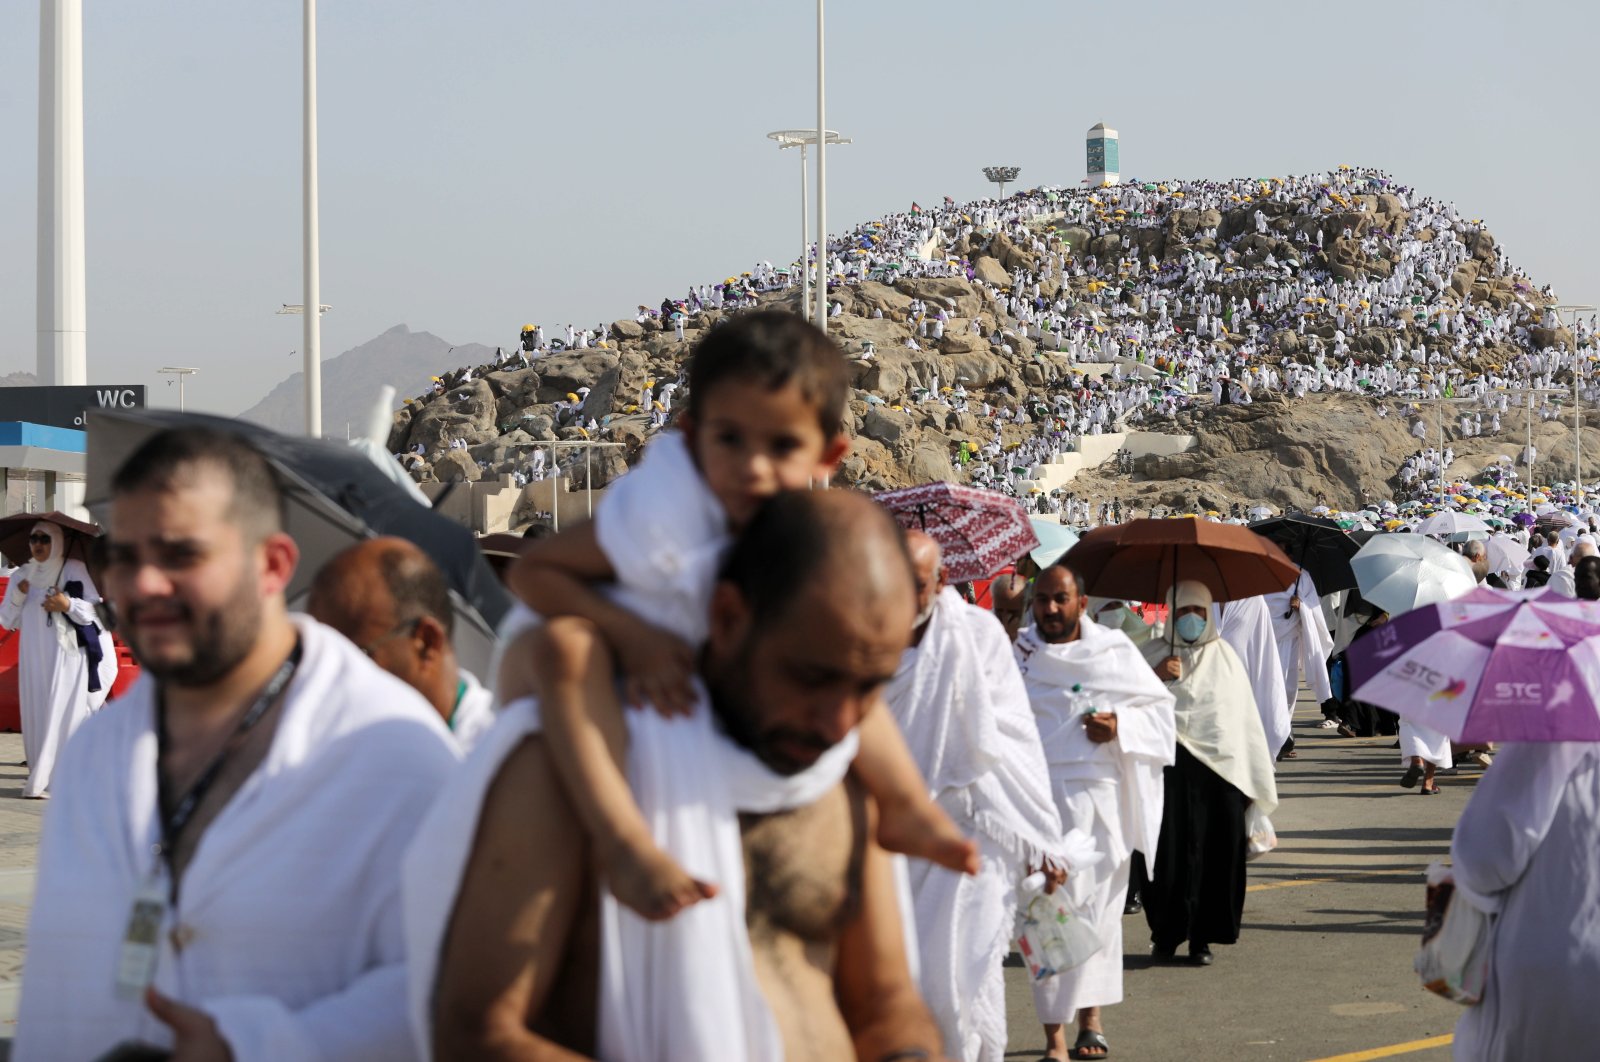 Jutaan peziarah Muslim berkumpul di Gunung Arafat pada klimaks haji